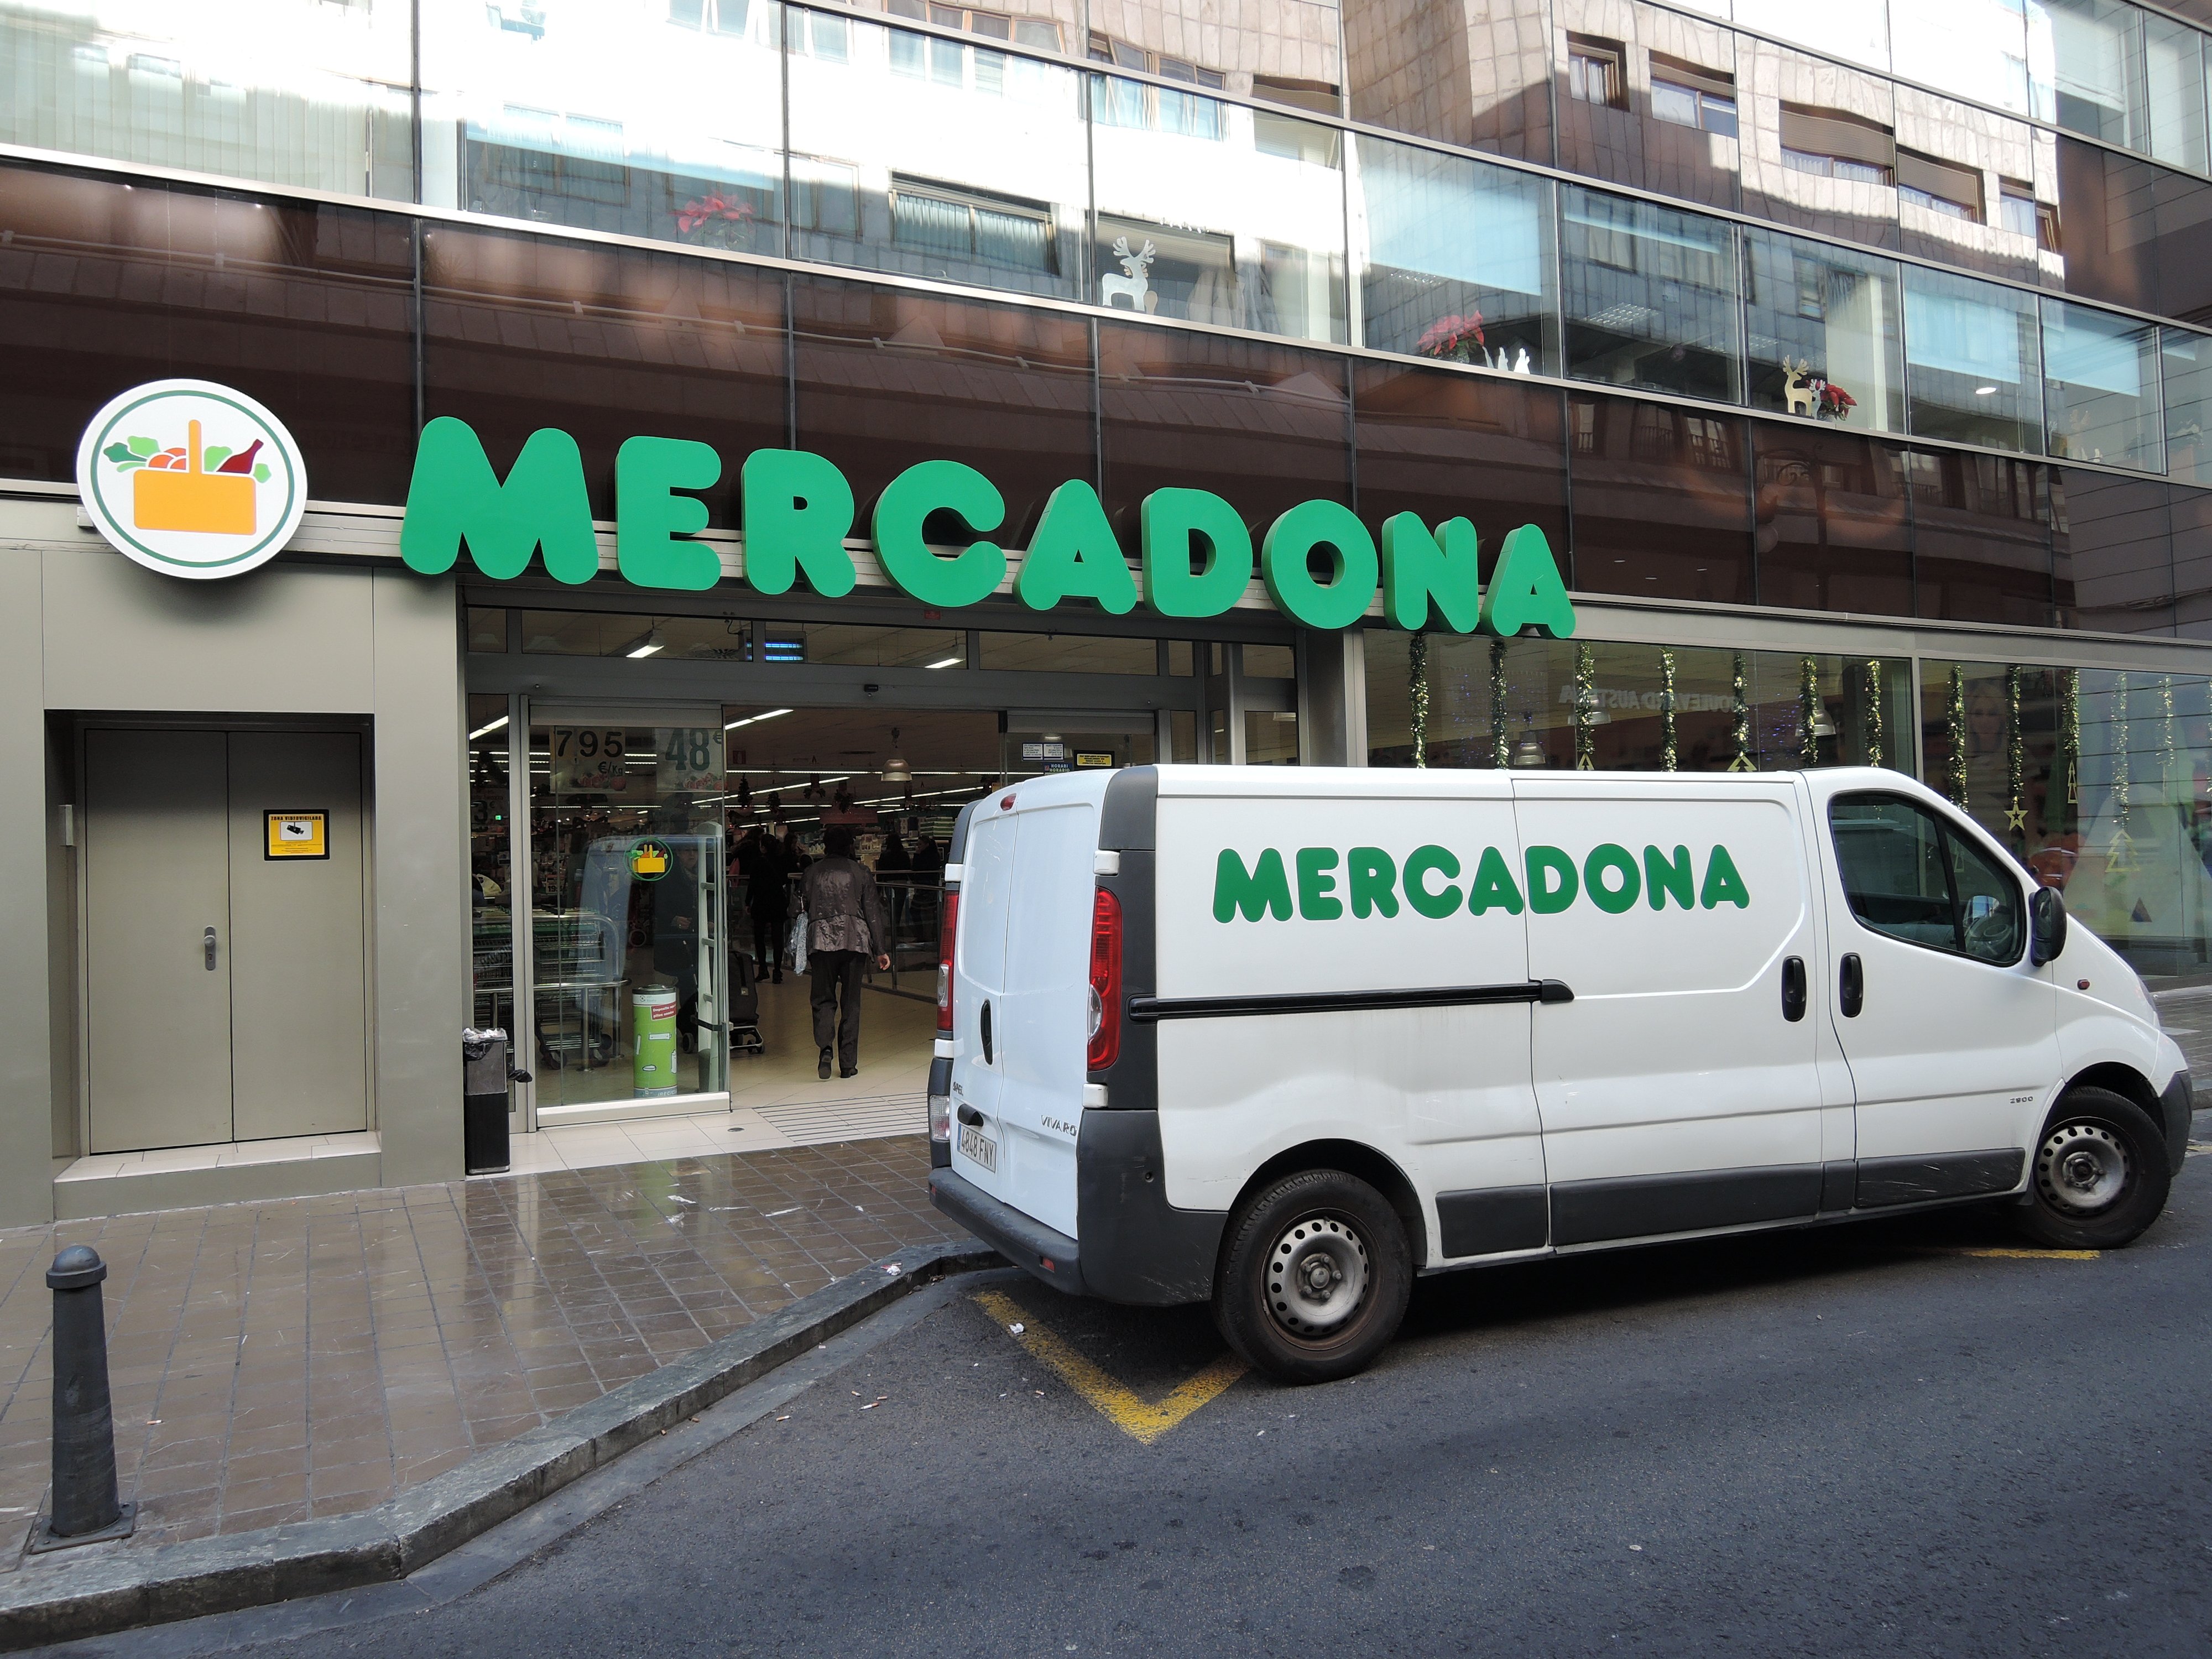 Més inversions a Barcelona: Mercadona obre un nou centre logístic